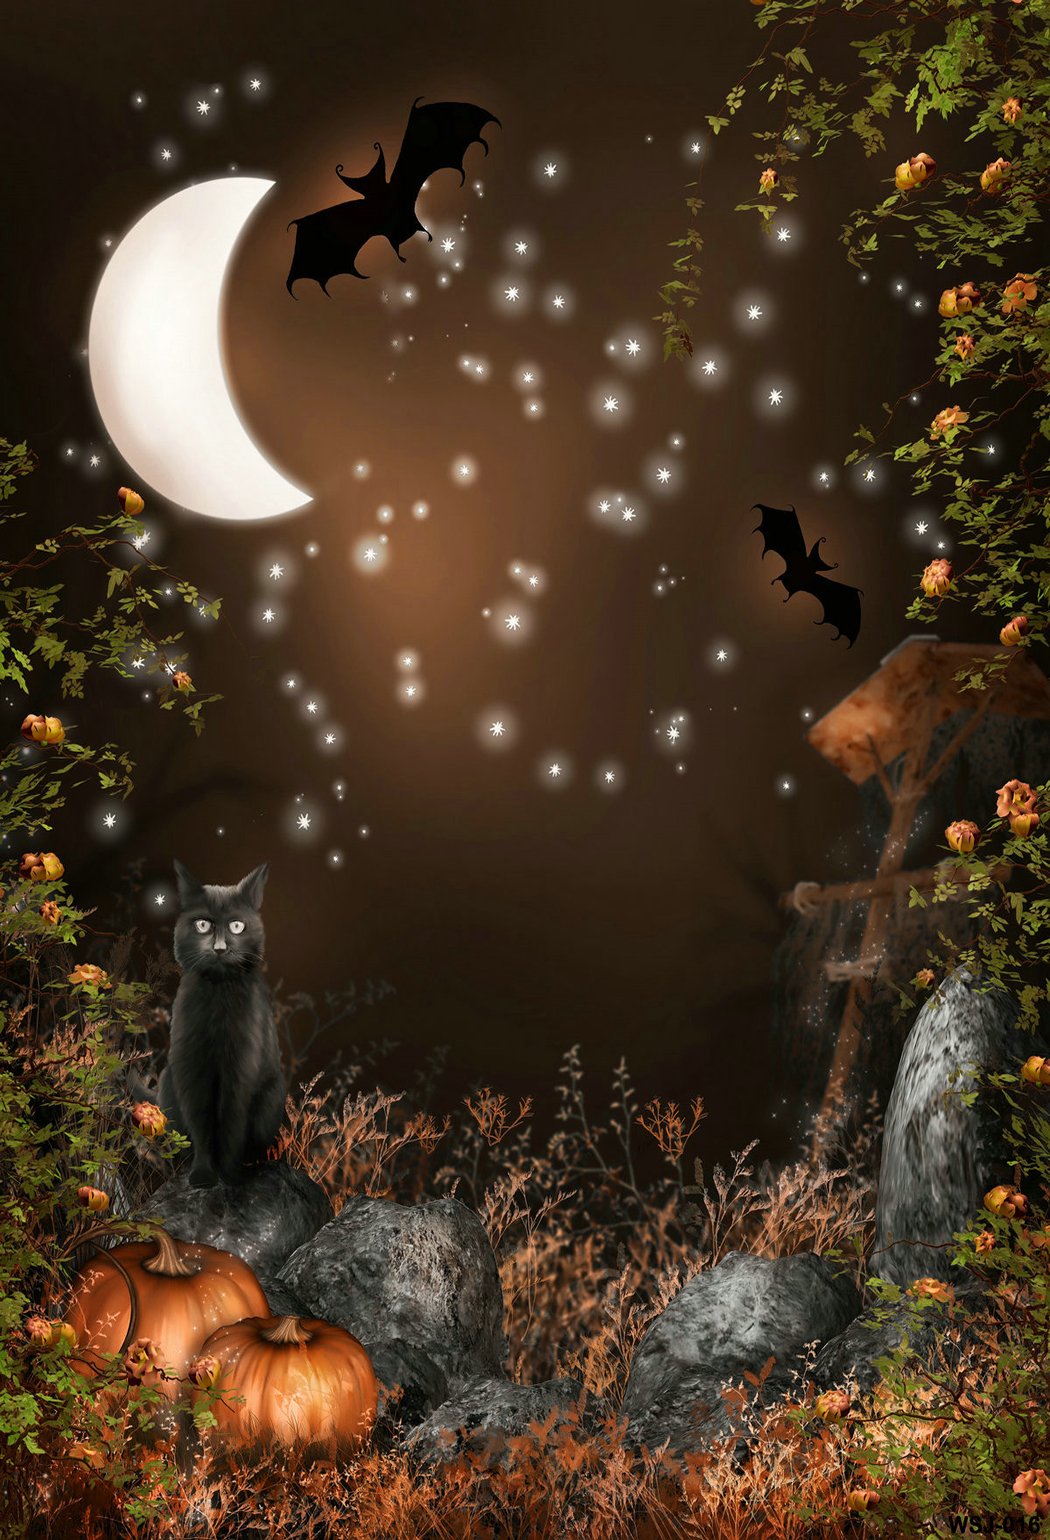 Kate Nacht Mond Bat Halloween Hintergrund für Kinder - Katebackdrop.de